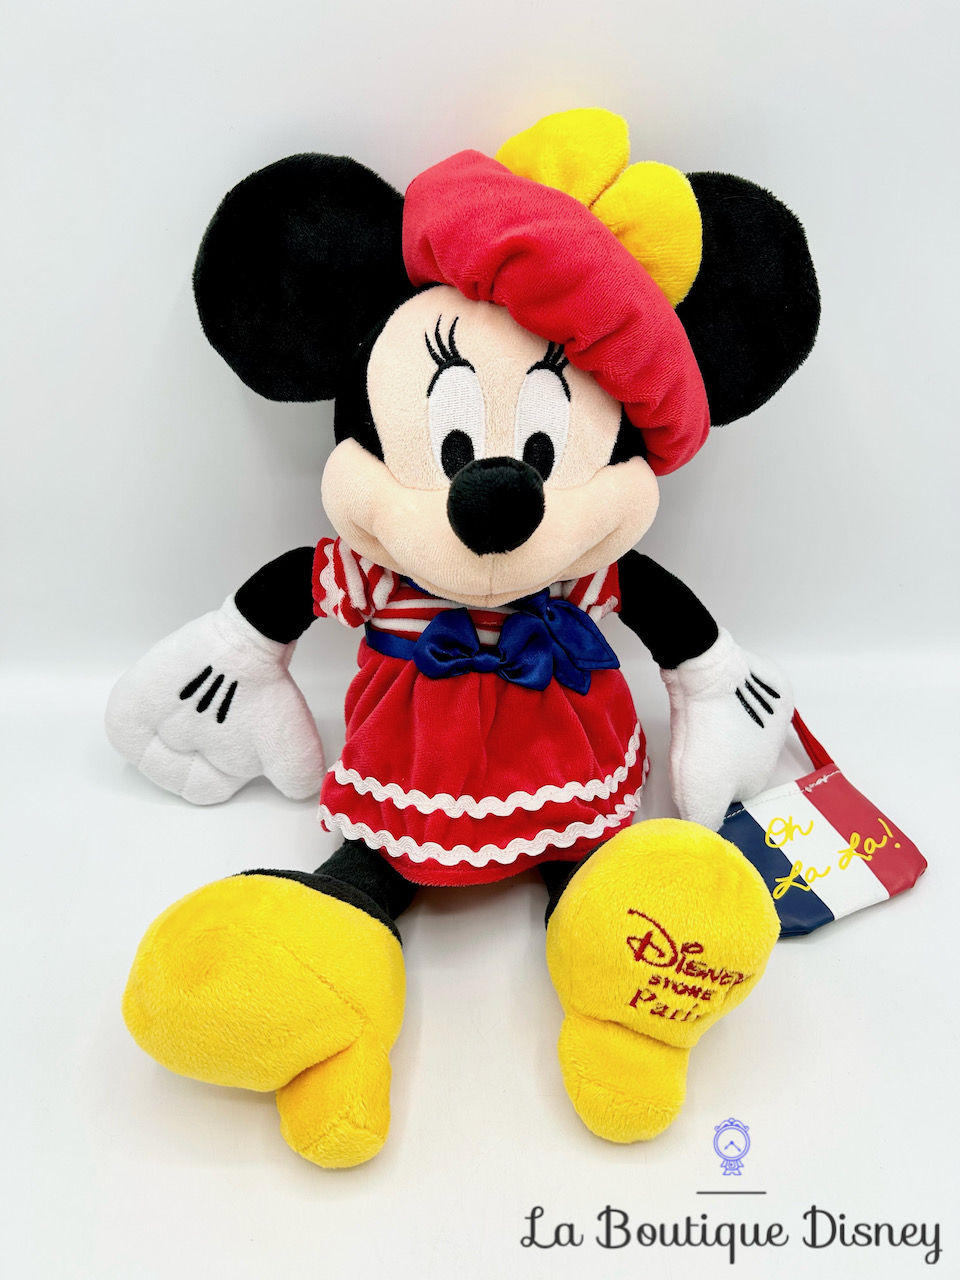 Peluche Minnie Mouse Parisienne Disney Store Paris 2015 Oh la la 37 cm